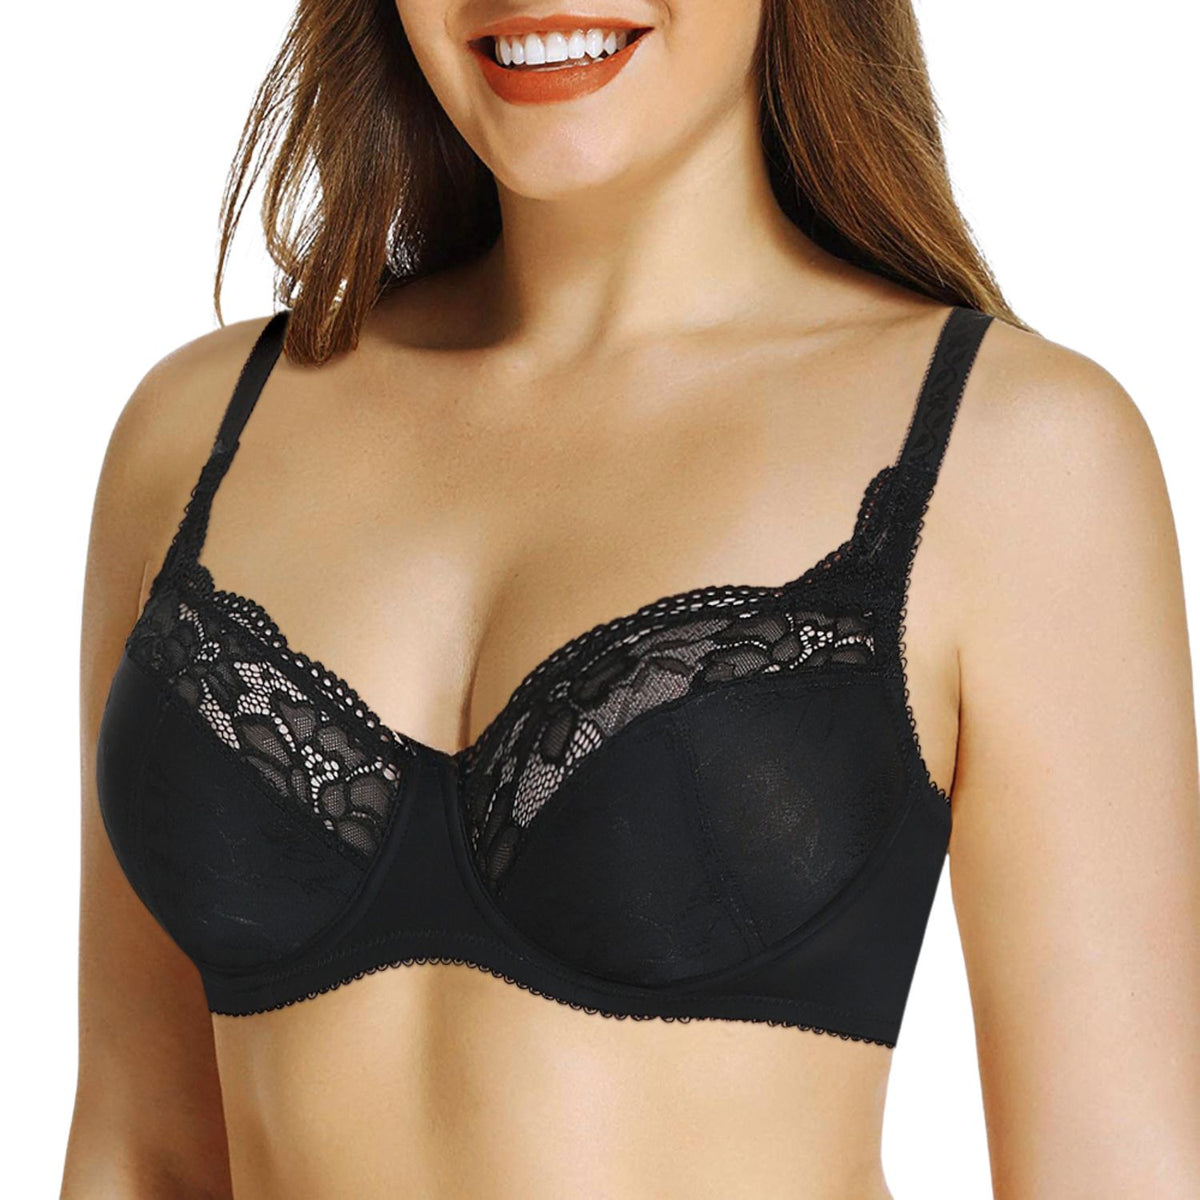  Womens Minimizer Bra Full Coverage Plus Size Underwire Lace  Unlined Sexy Black 36E